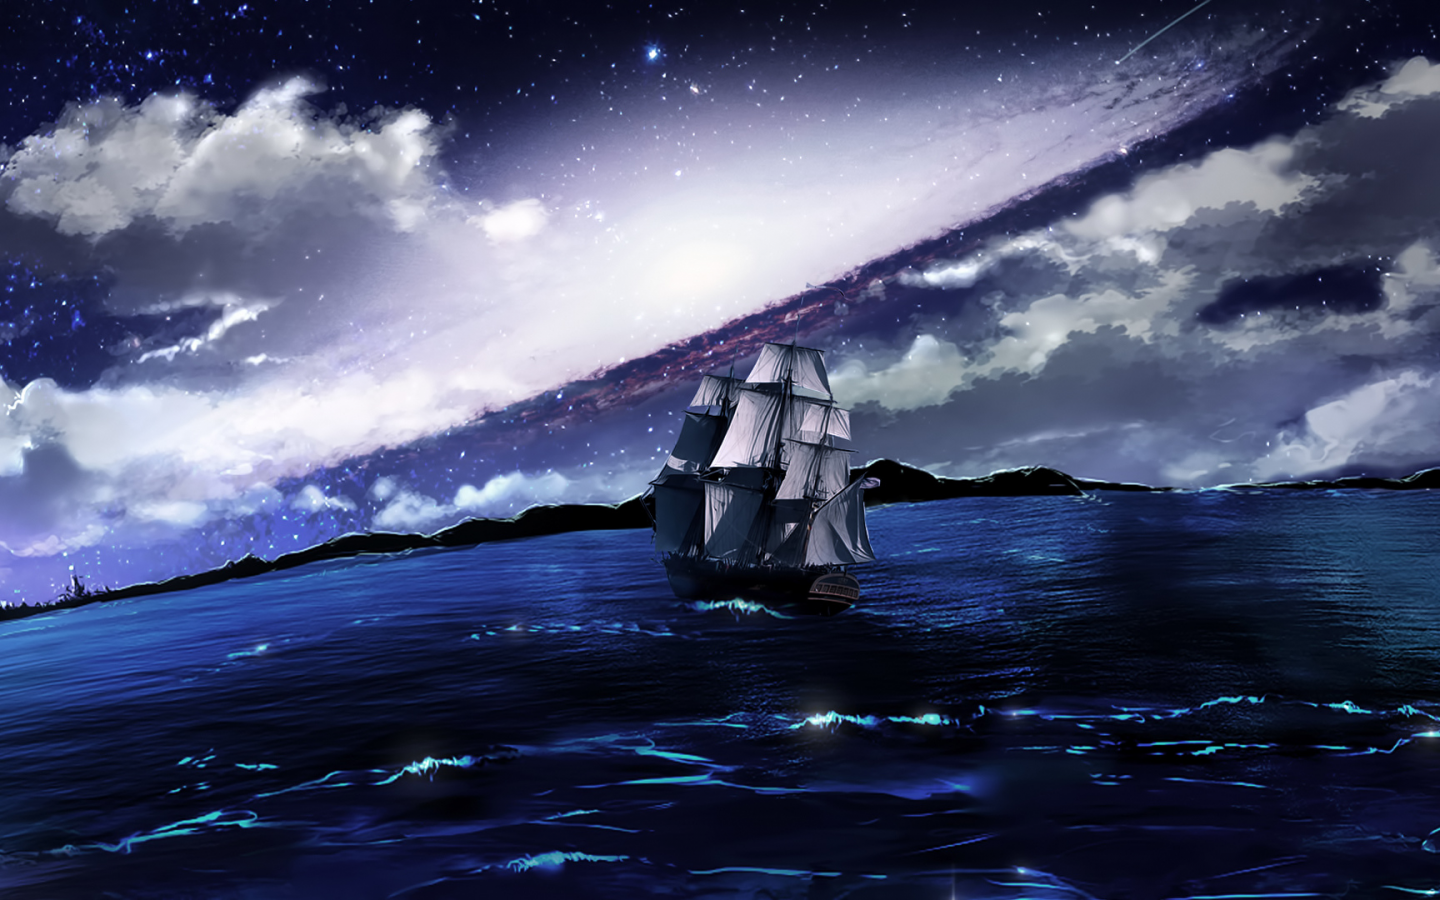 море, плавание, корабль, ночь, парусник, облака